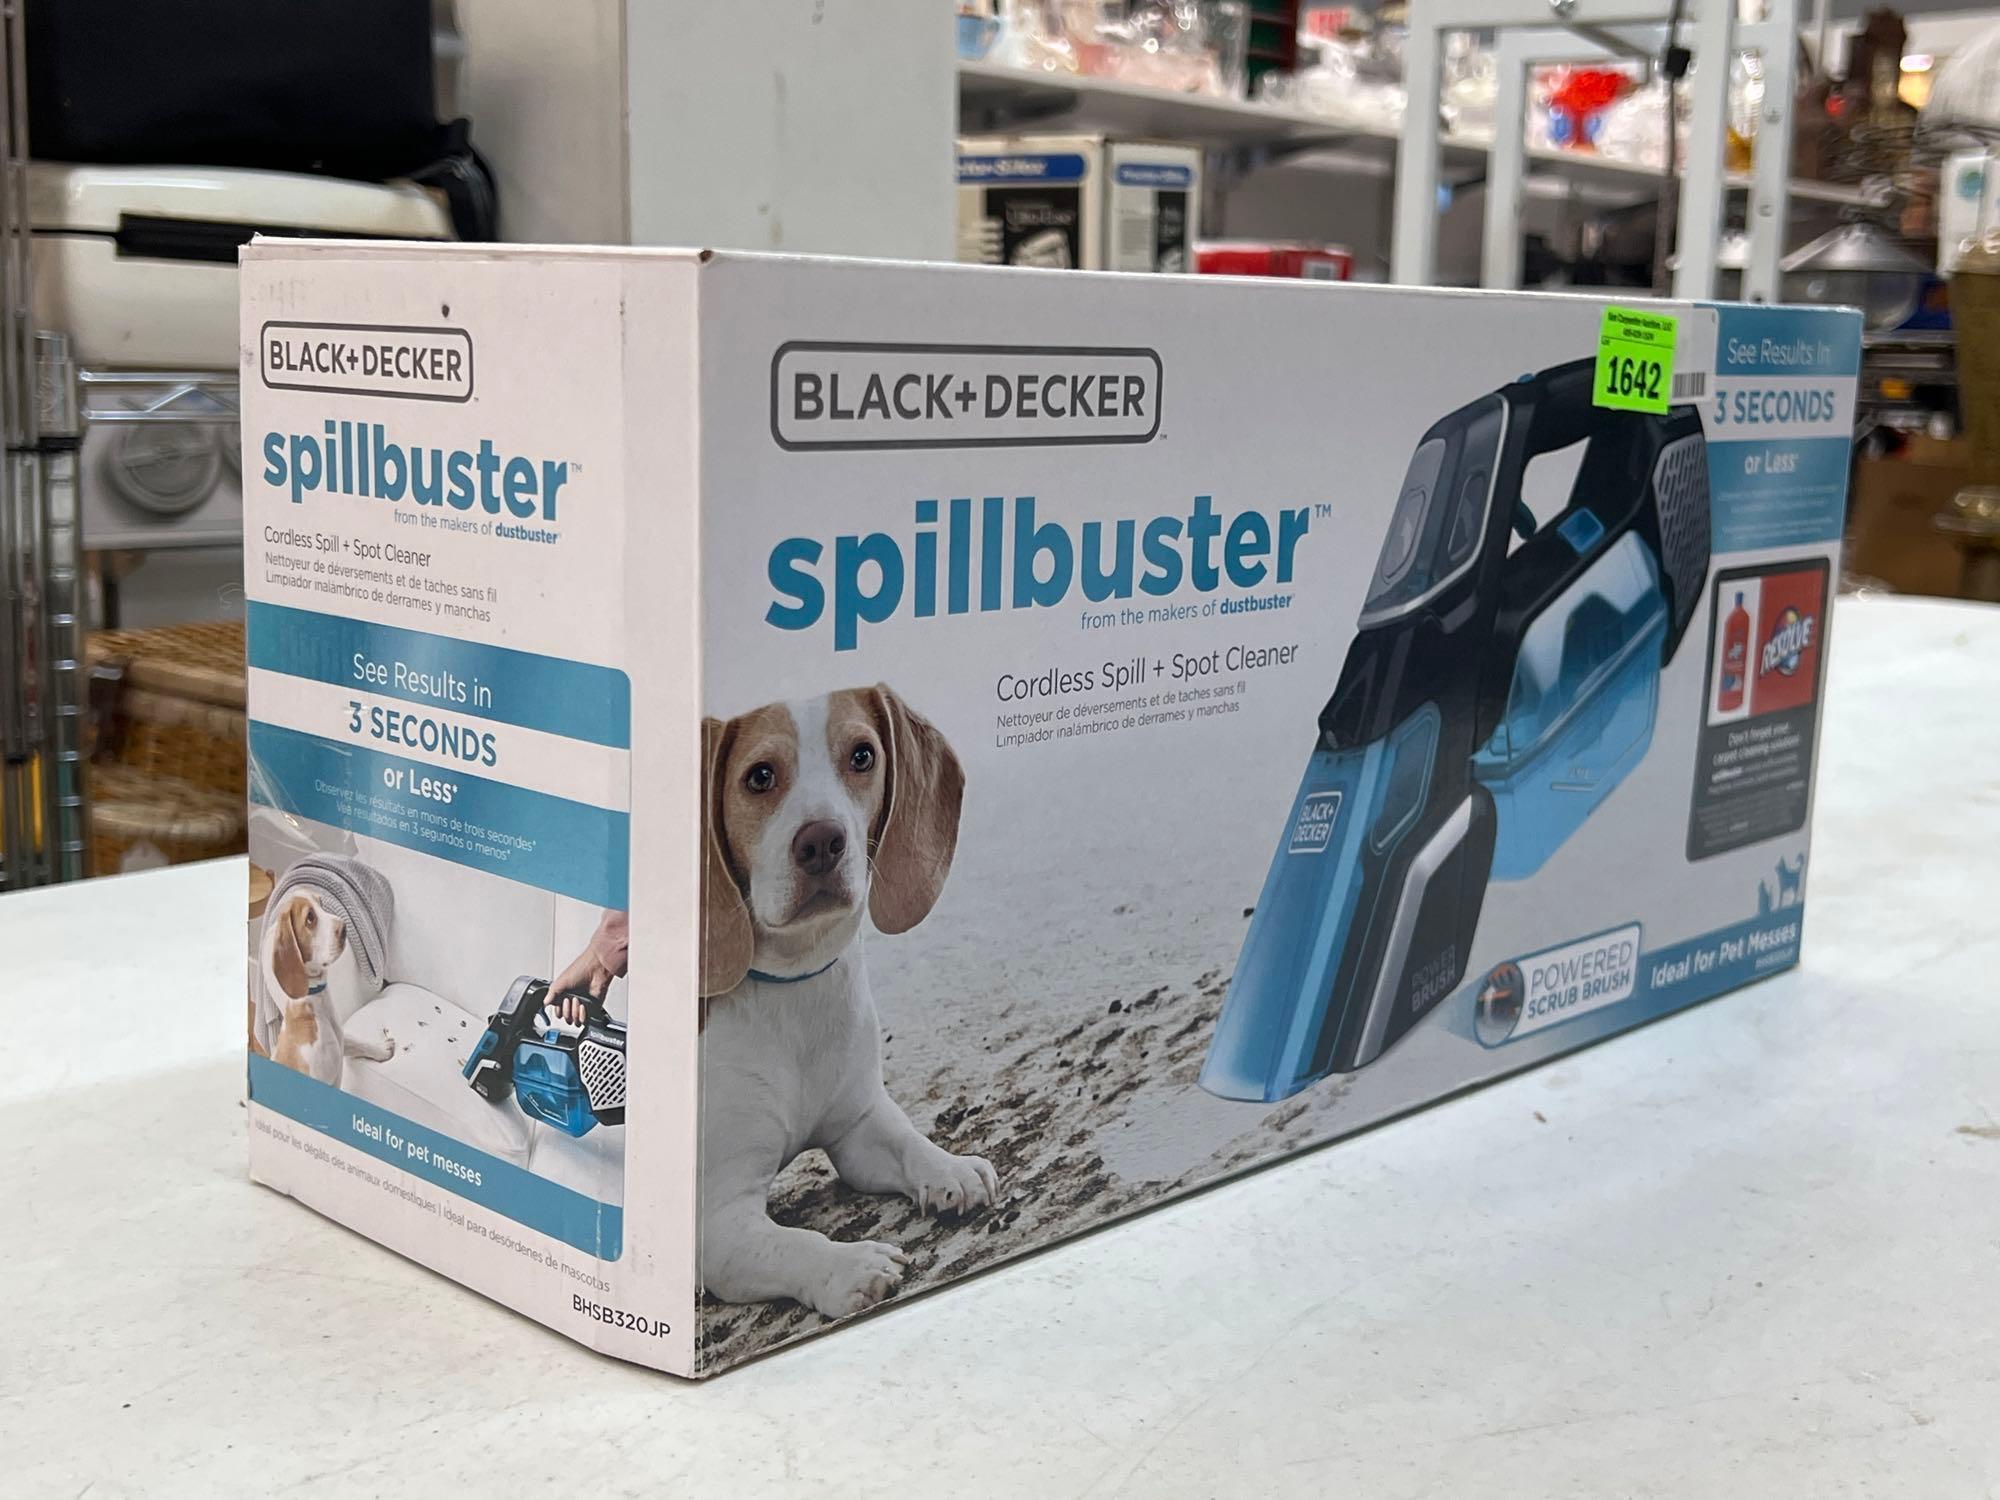  BLACK+DECKER spillbuster Cordless Spill + Spot Cleaner  (BHSB320JP)